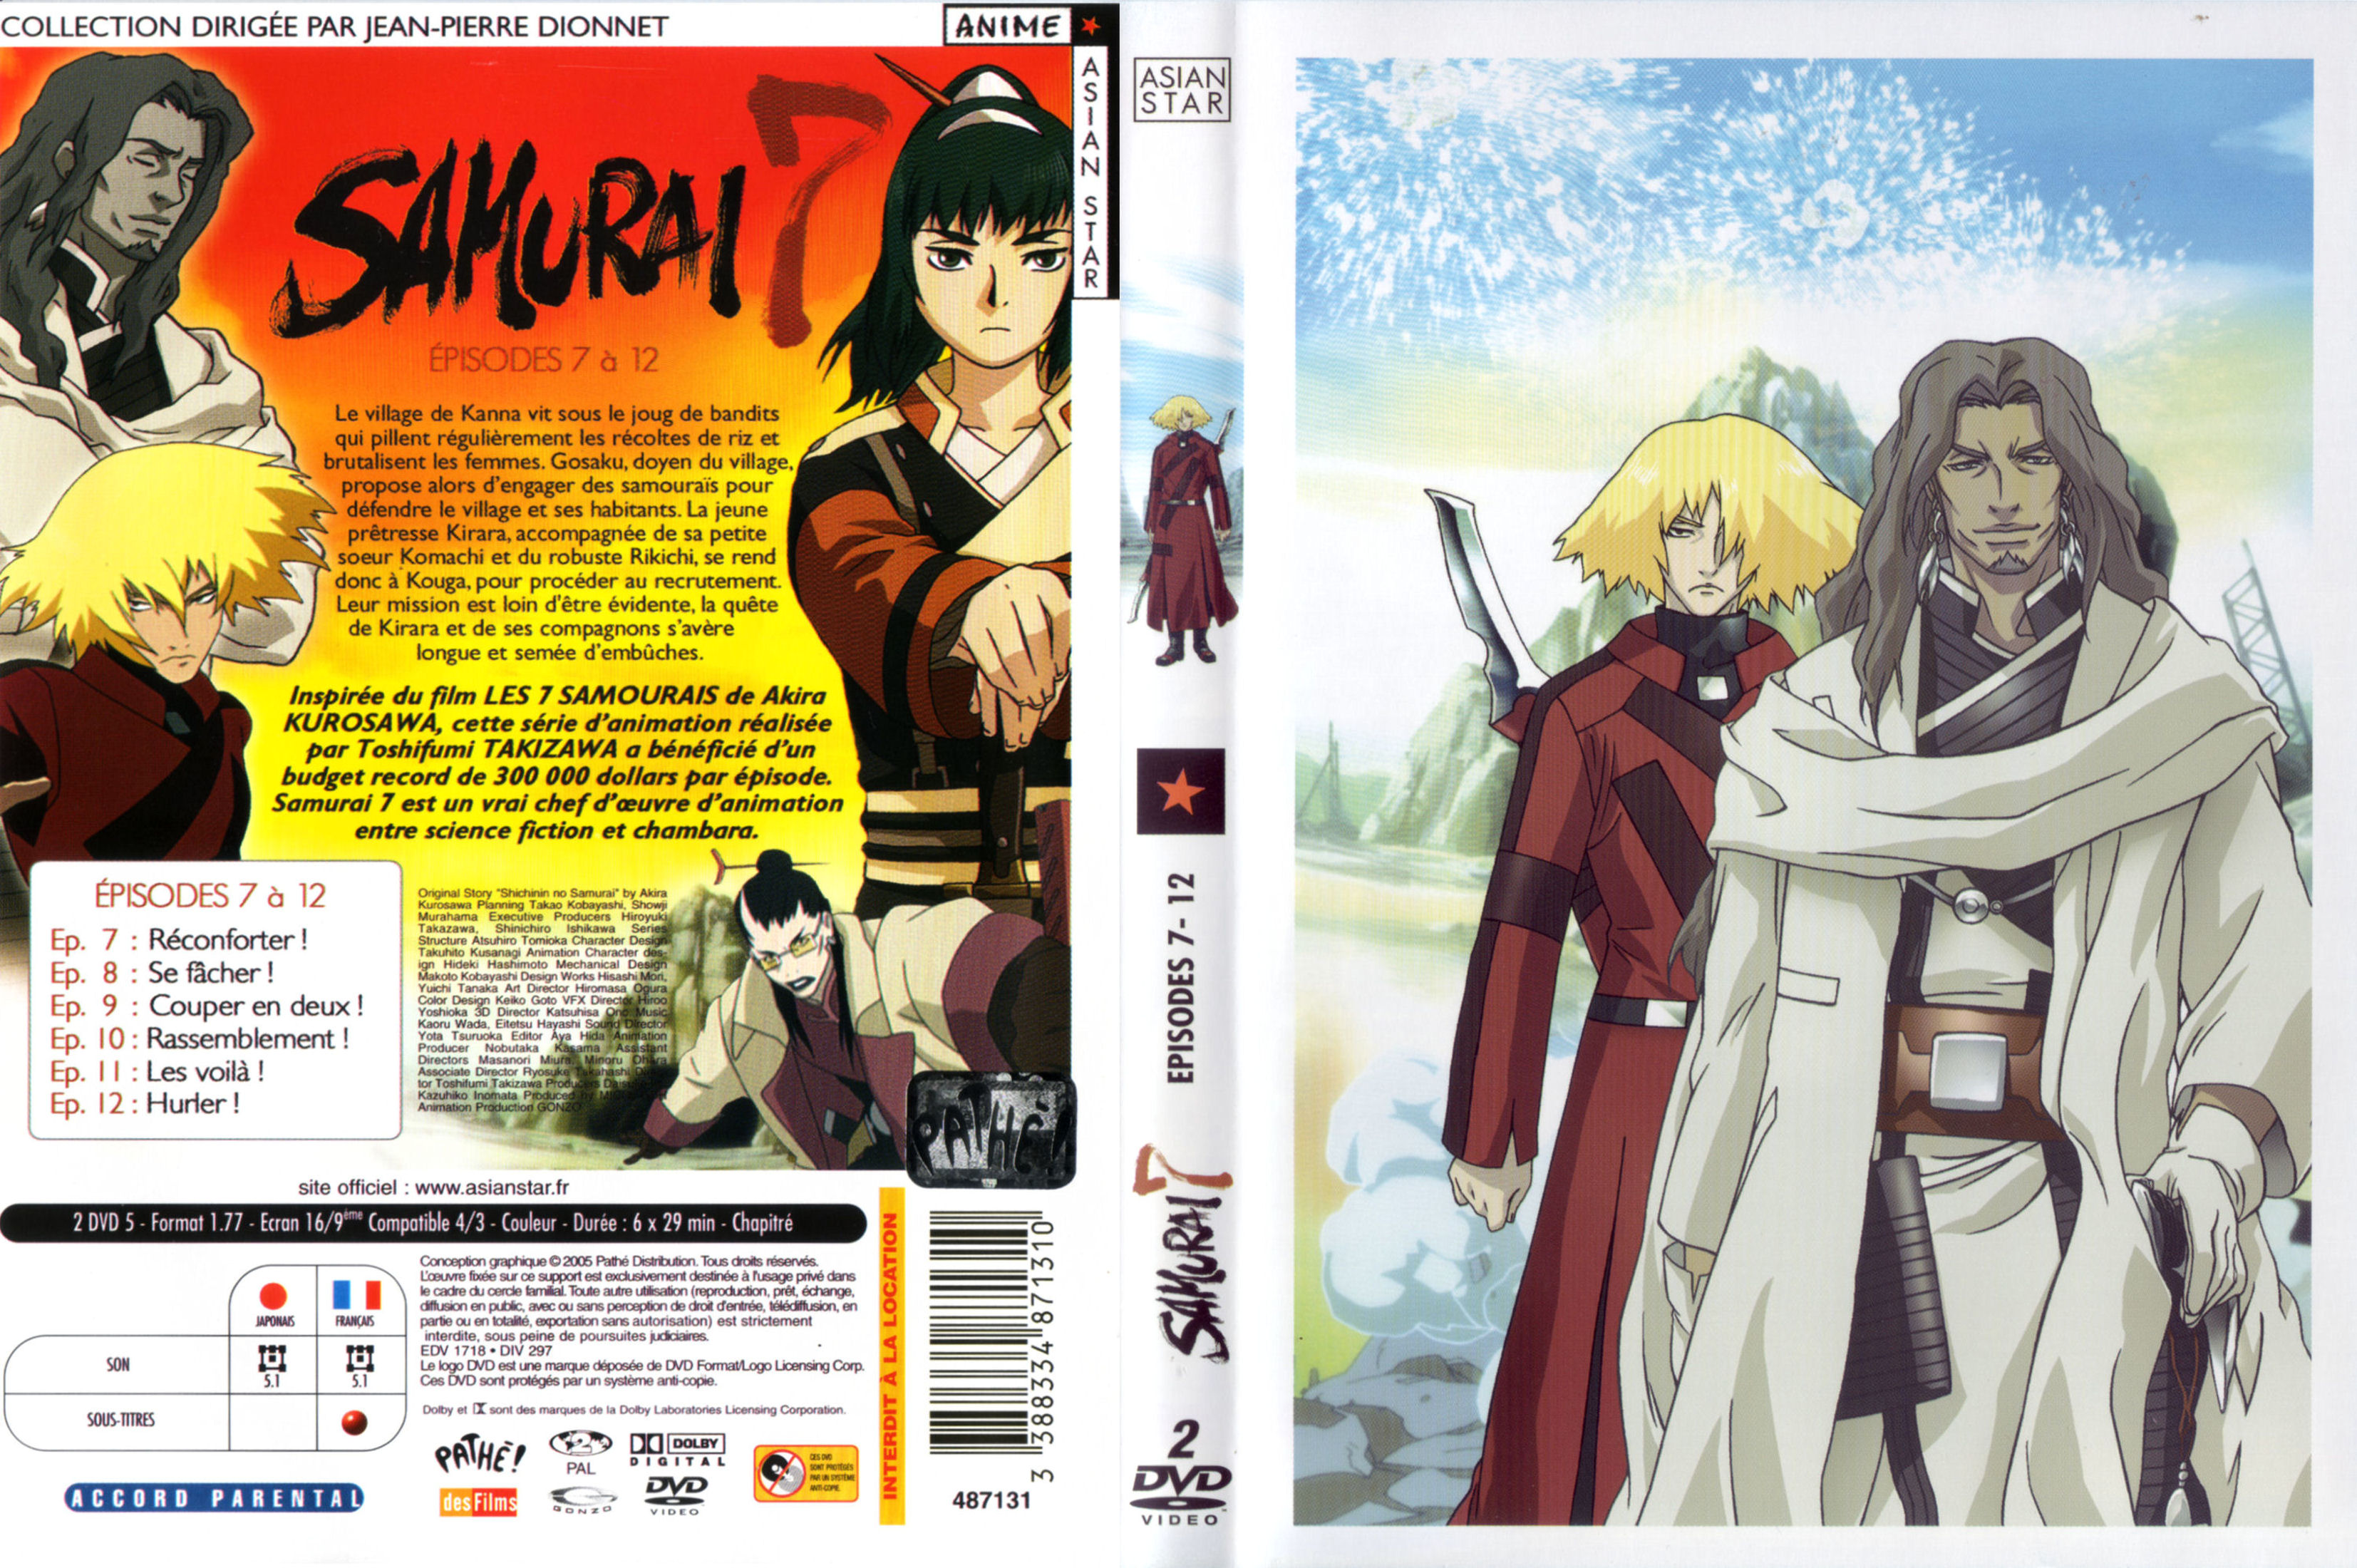 Jaquette DVD Samurai 7 vol 02